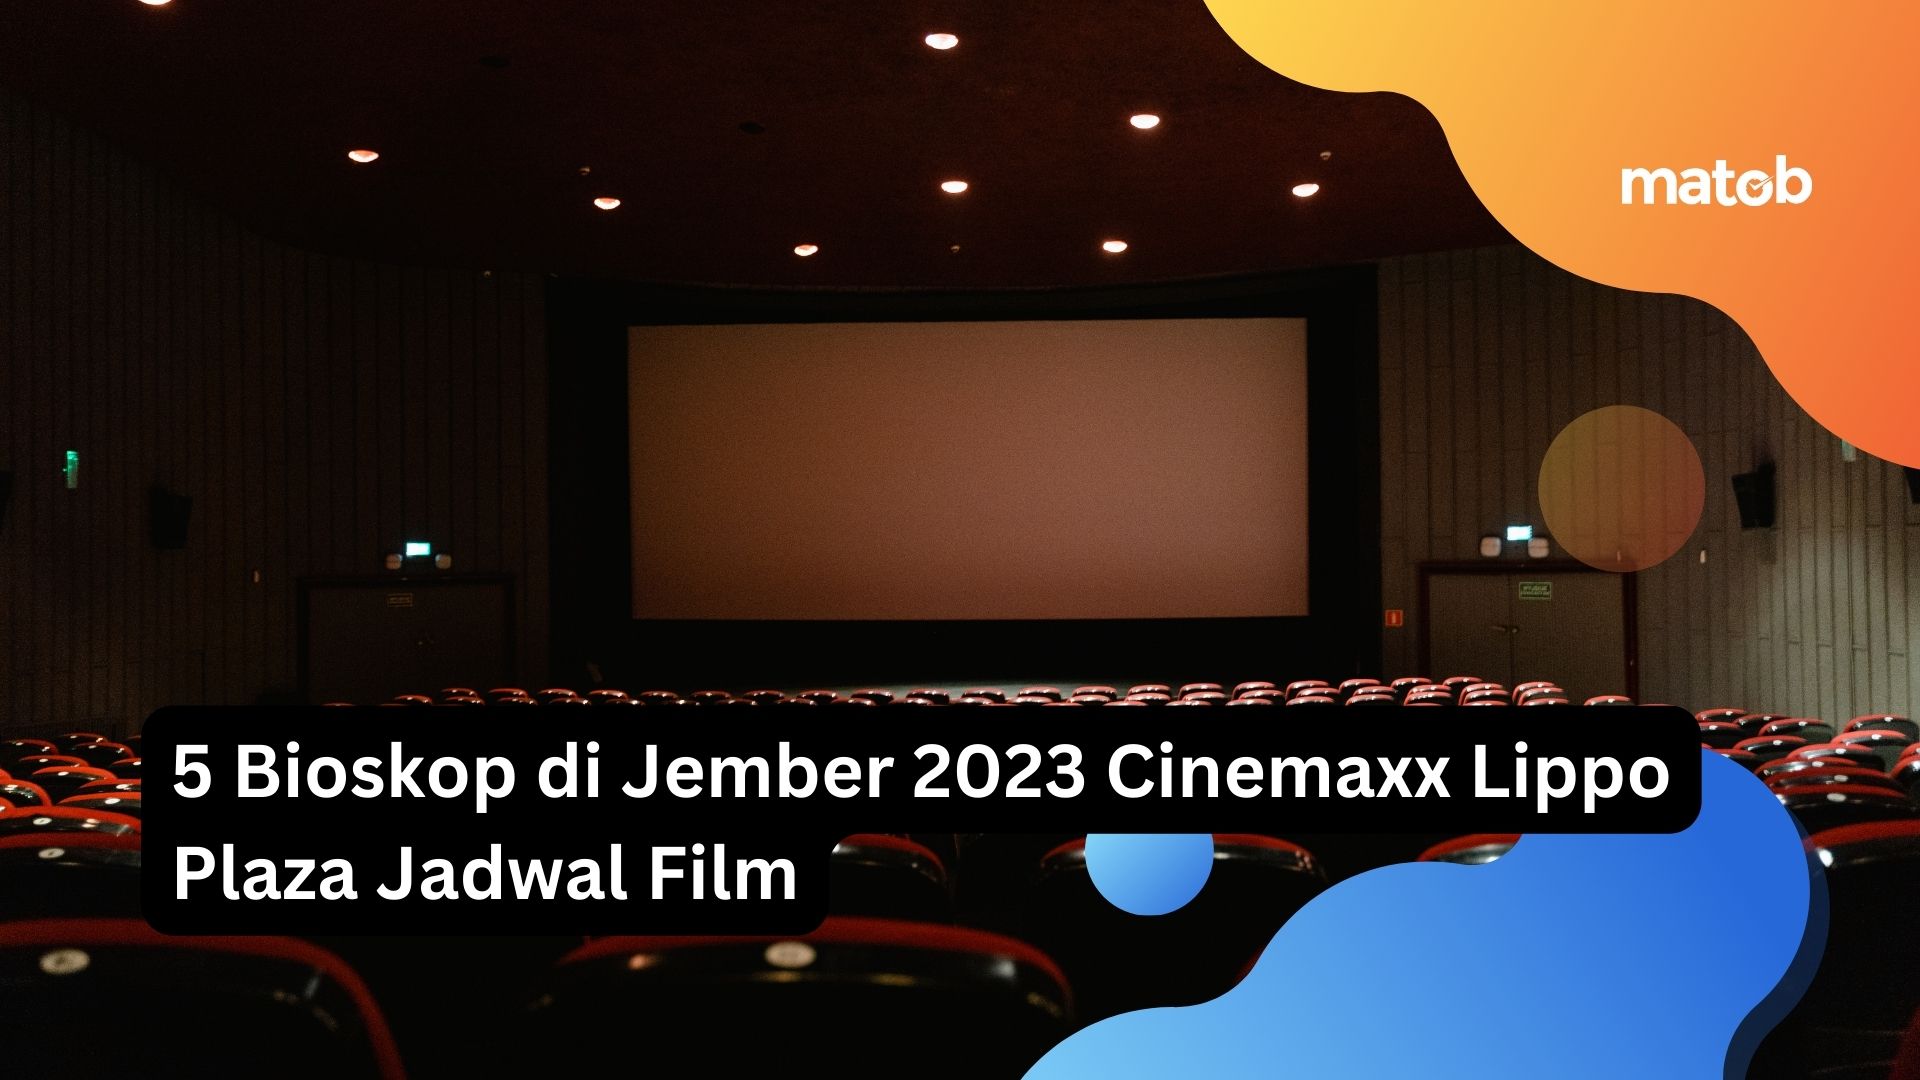 5 Bioskop di Jember 2023 Cinemaxx Lippo Plaza Harga Tiket Nonton